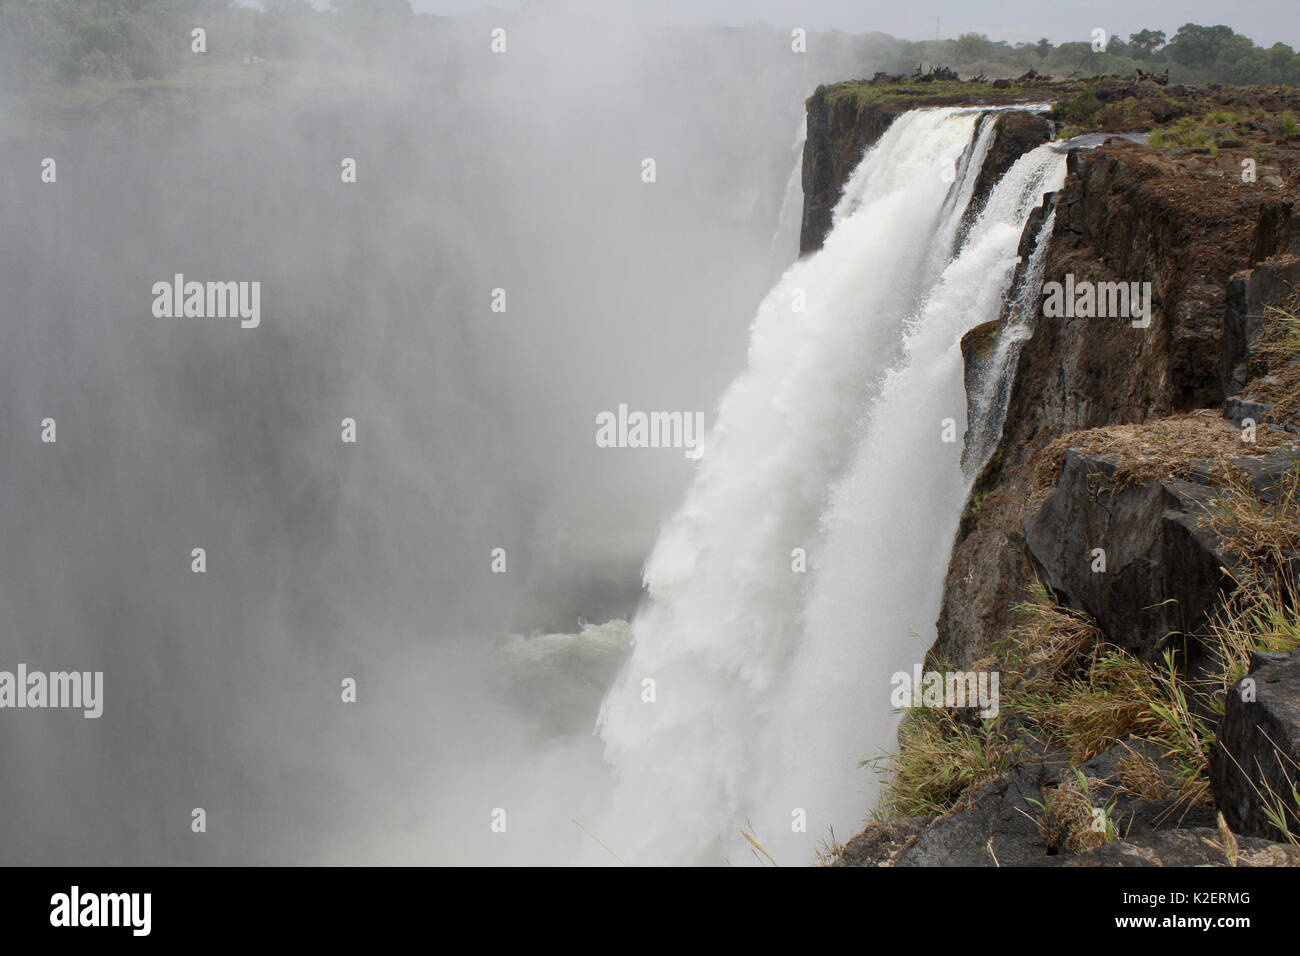 Landscape of the Victoria Falls, Zambia November 2010. Stock Photo